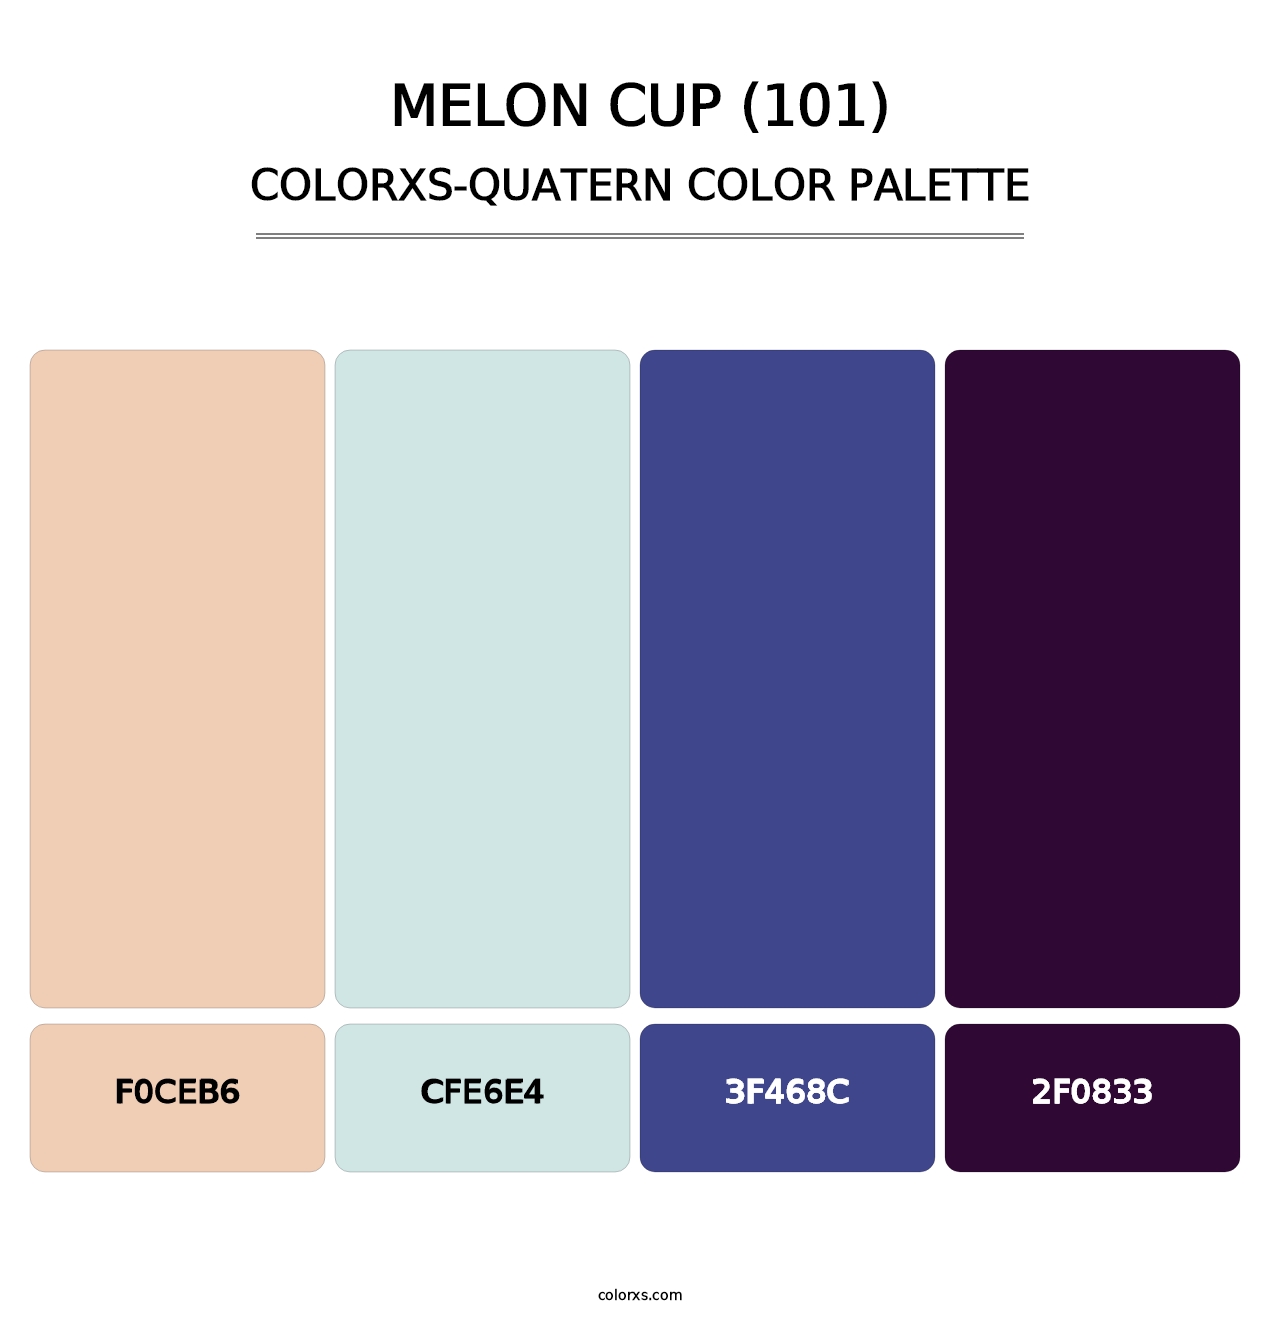 Melon Cup (101) - Colorxs Quatern Palette